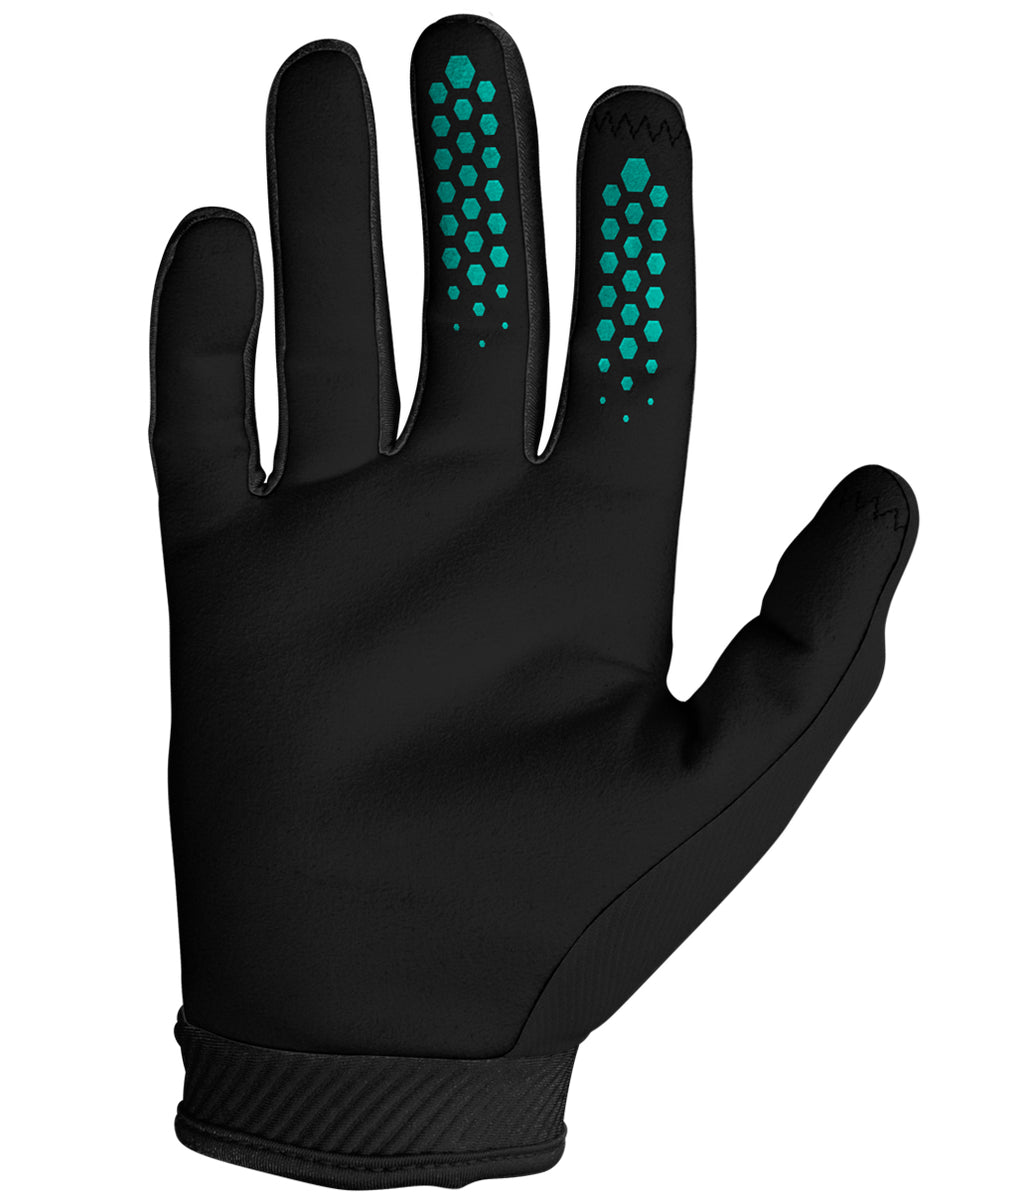 Cold Glove - Black/Aqua – Seven MX